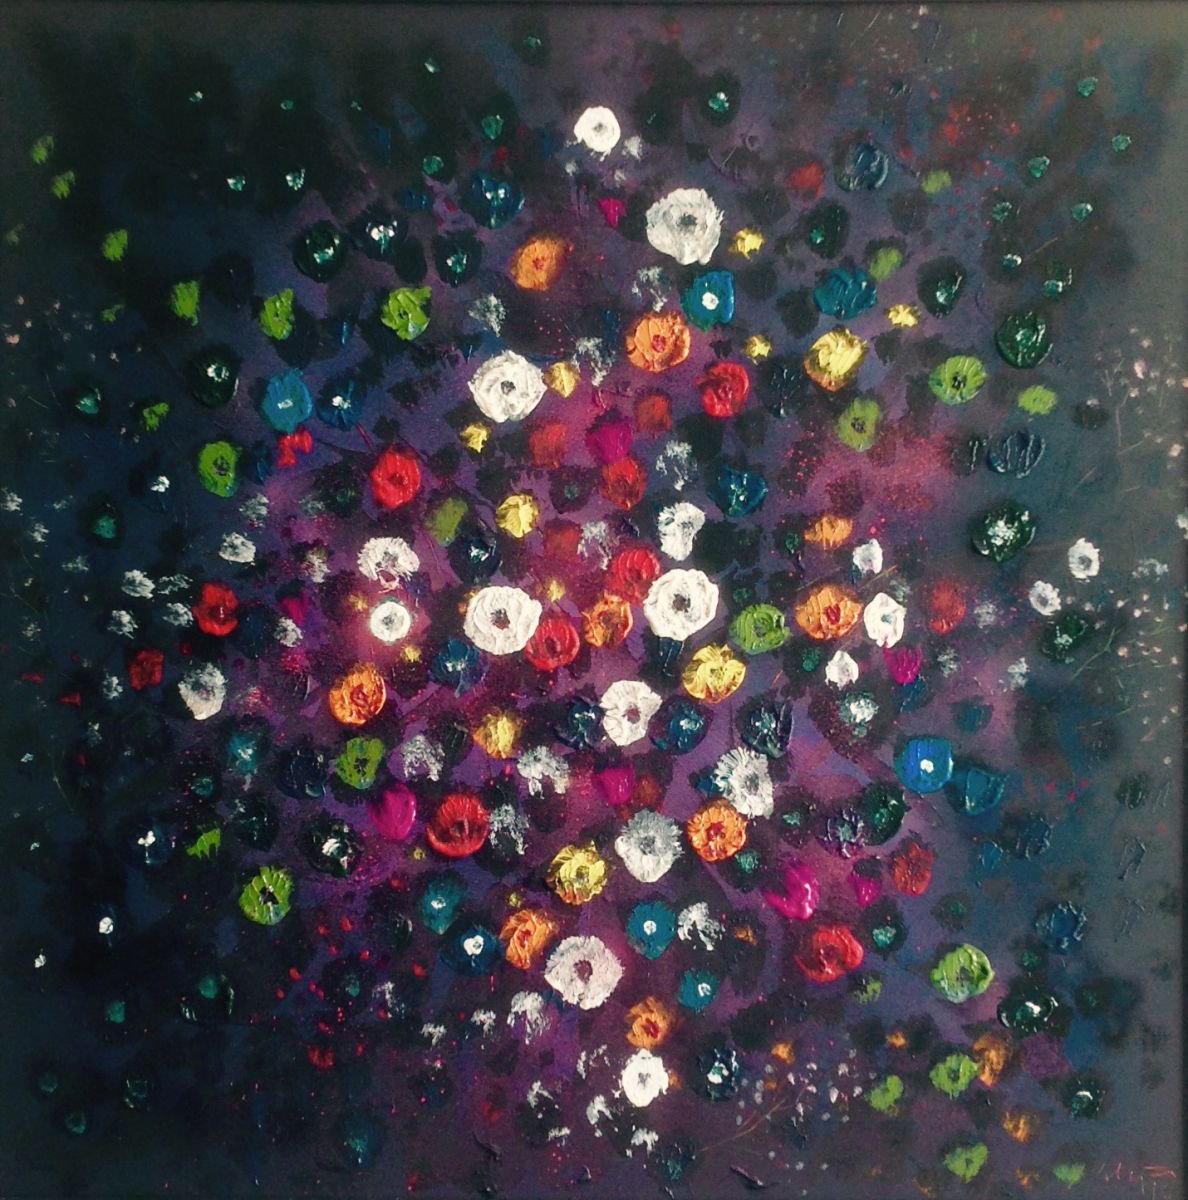 Ocean of flowers XVII by Alejos